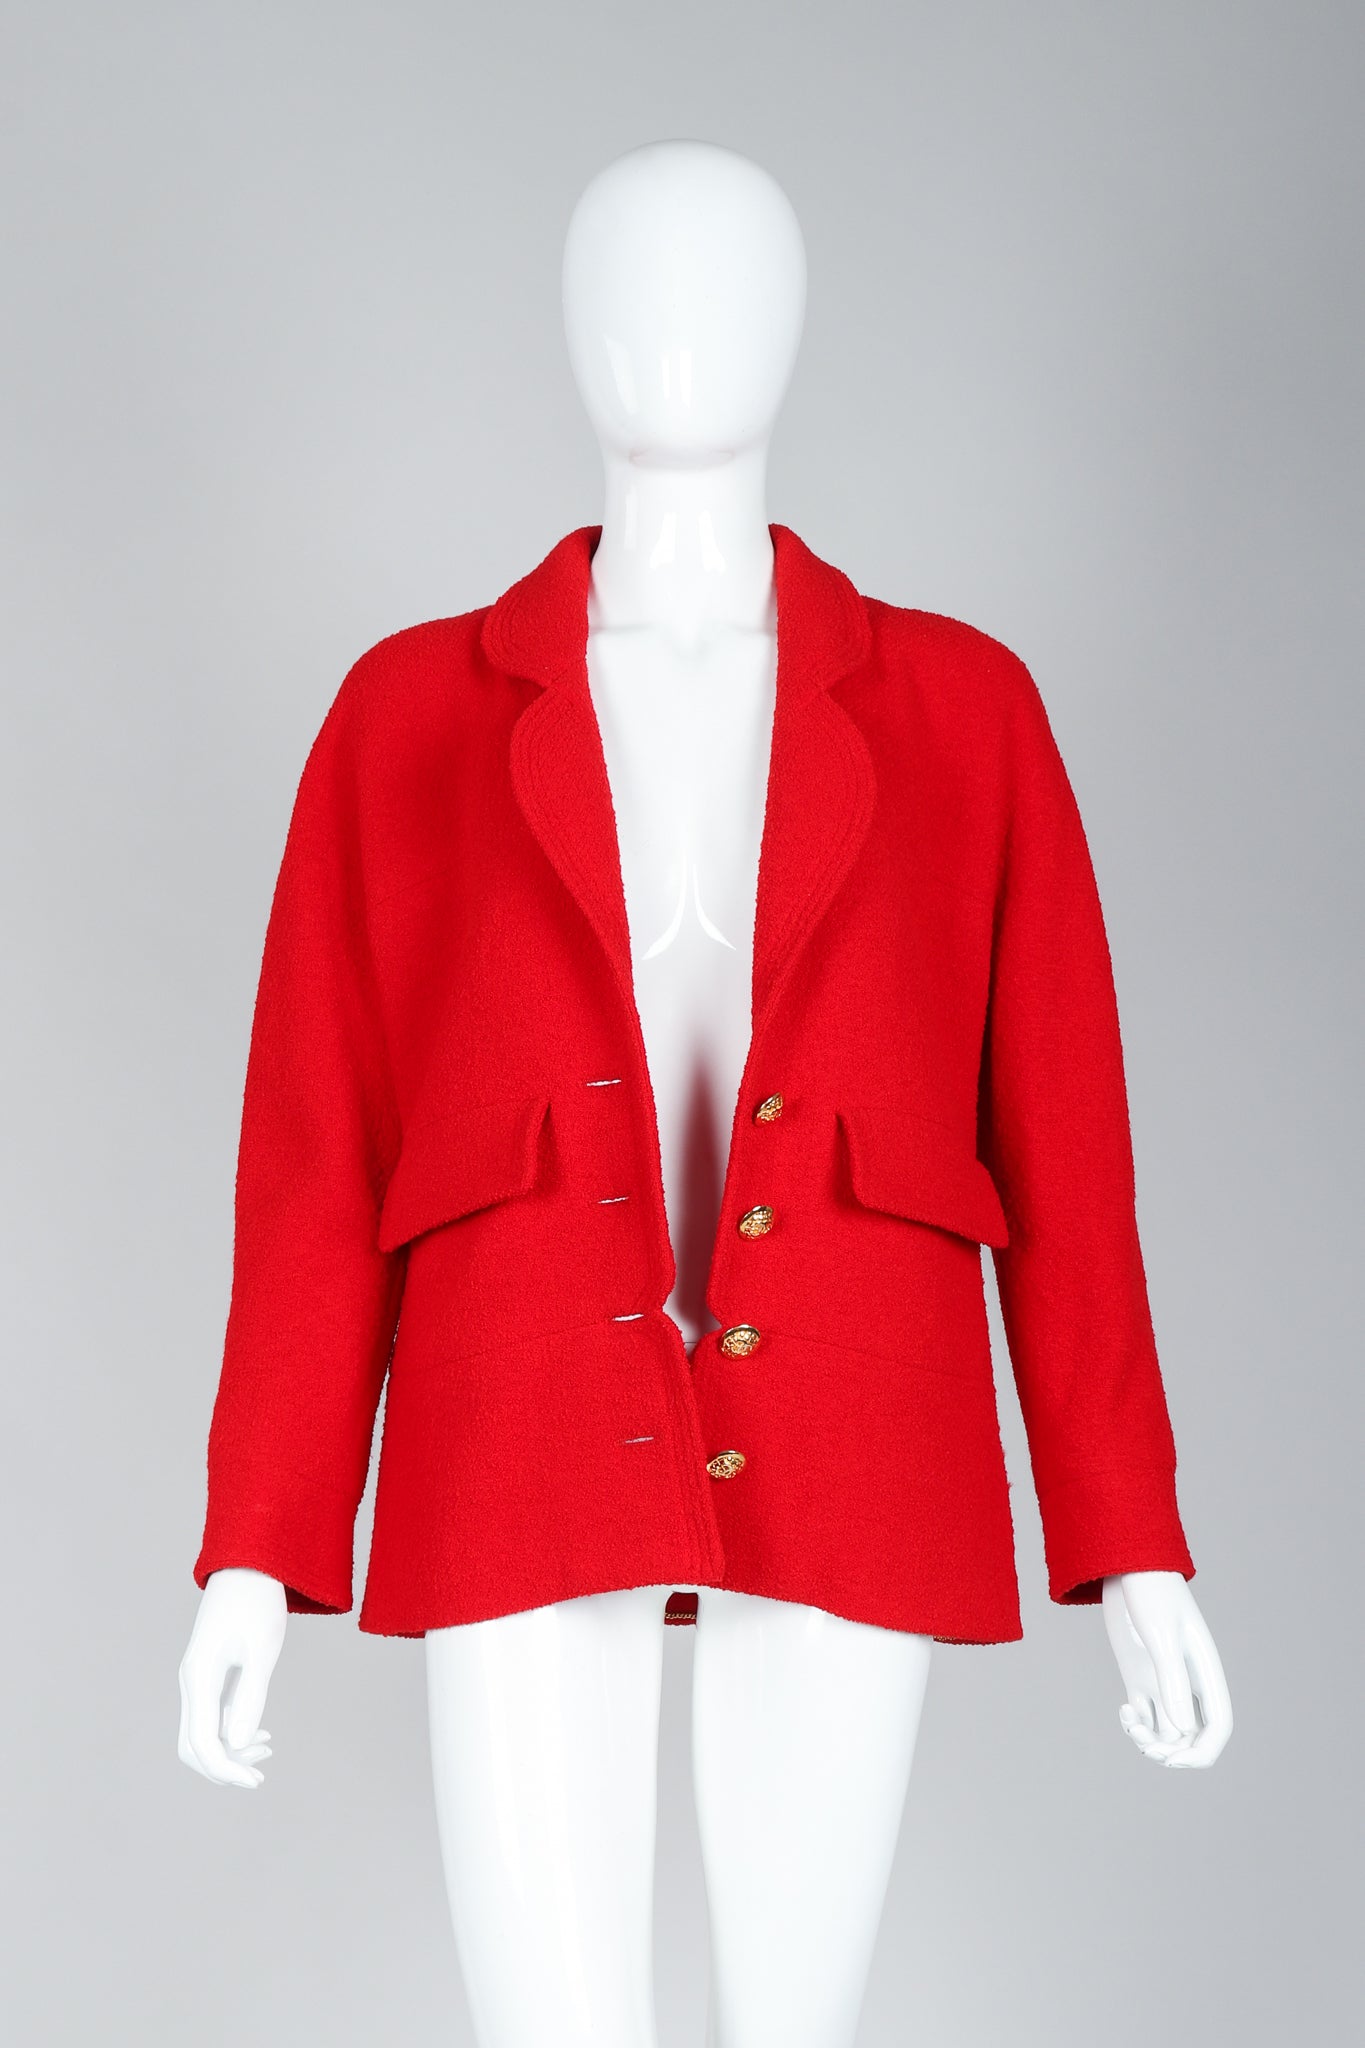 Recess Vintage Chanel Red Curved Lapel Bouclé Jacket on Mannequin, Unbuttoned Front